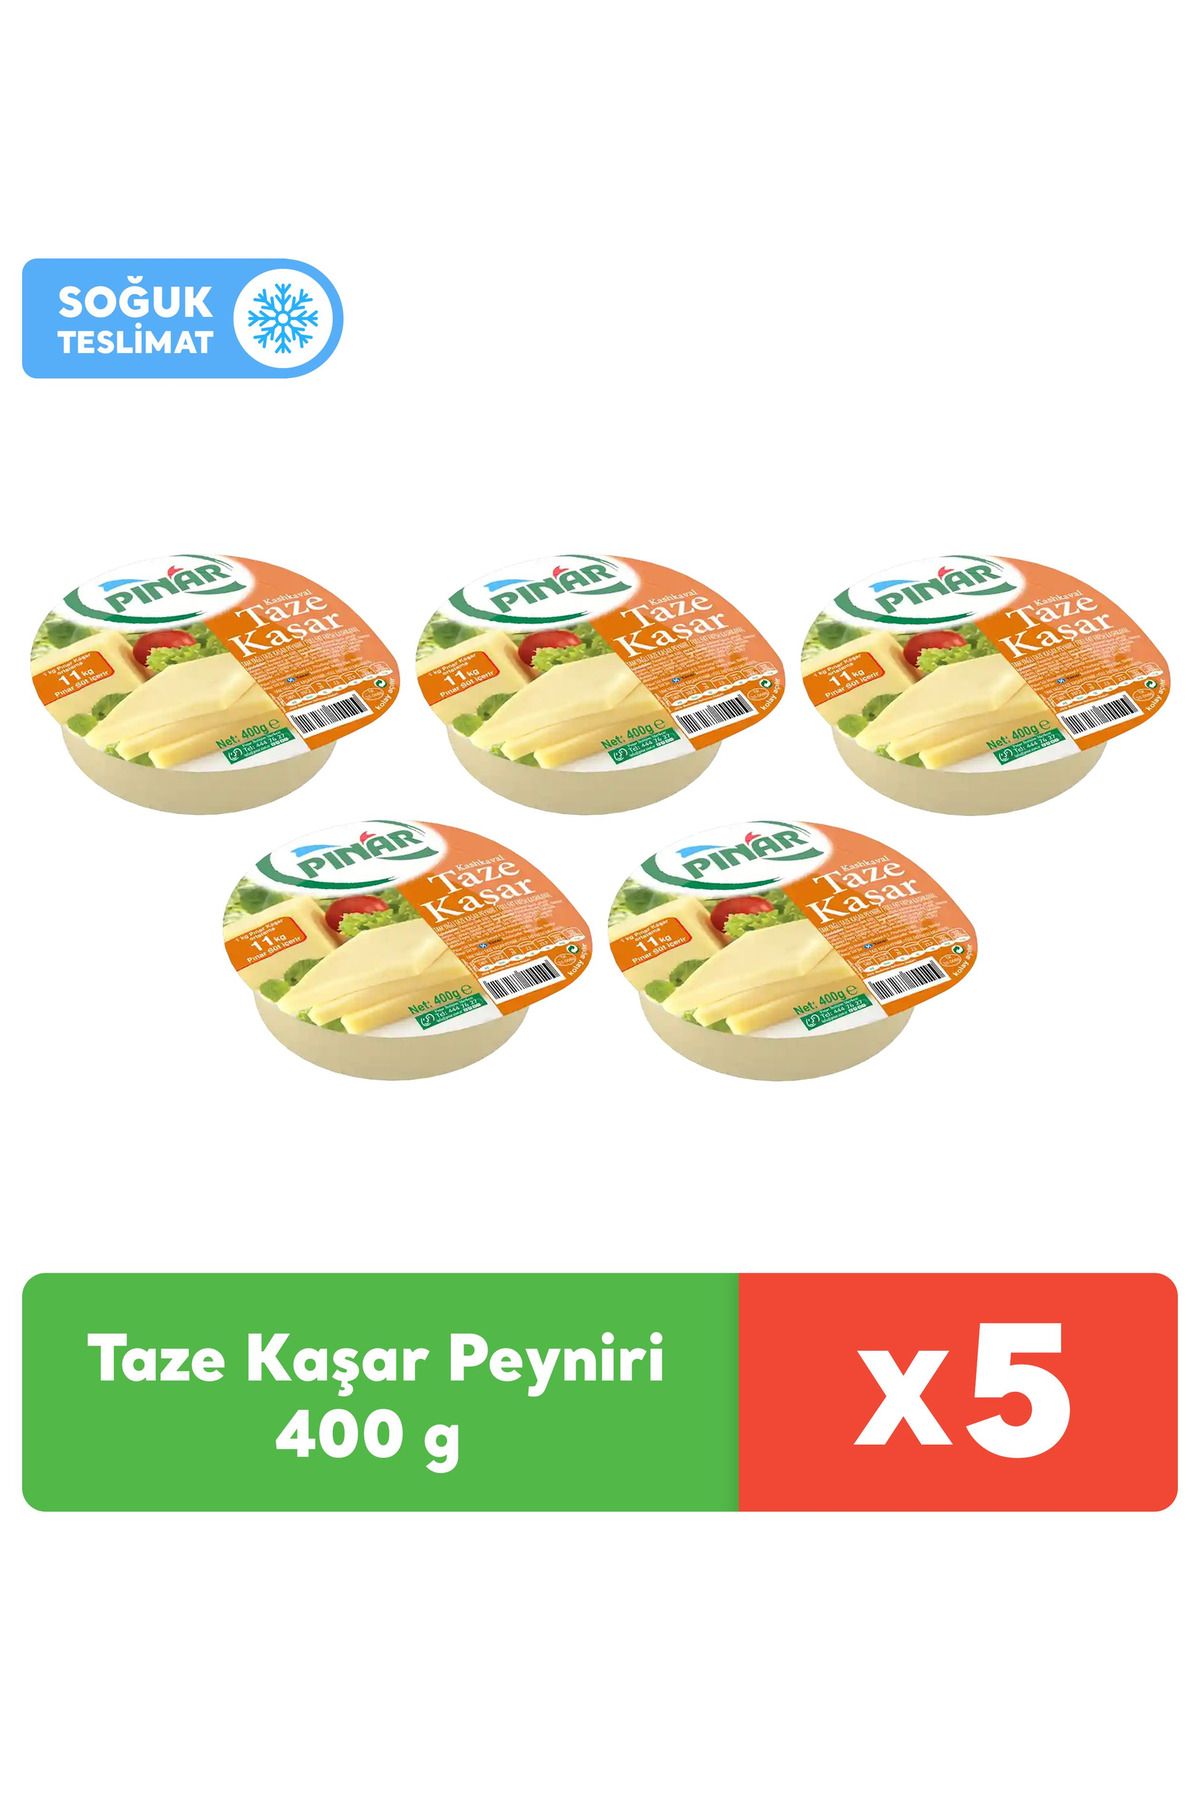 Pınar Taze Kaşar Peyniri 400 g x 5 Adet